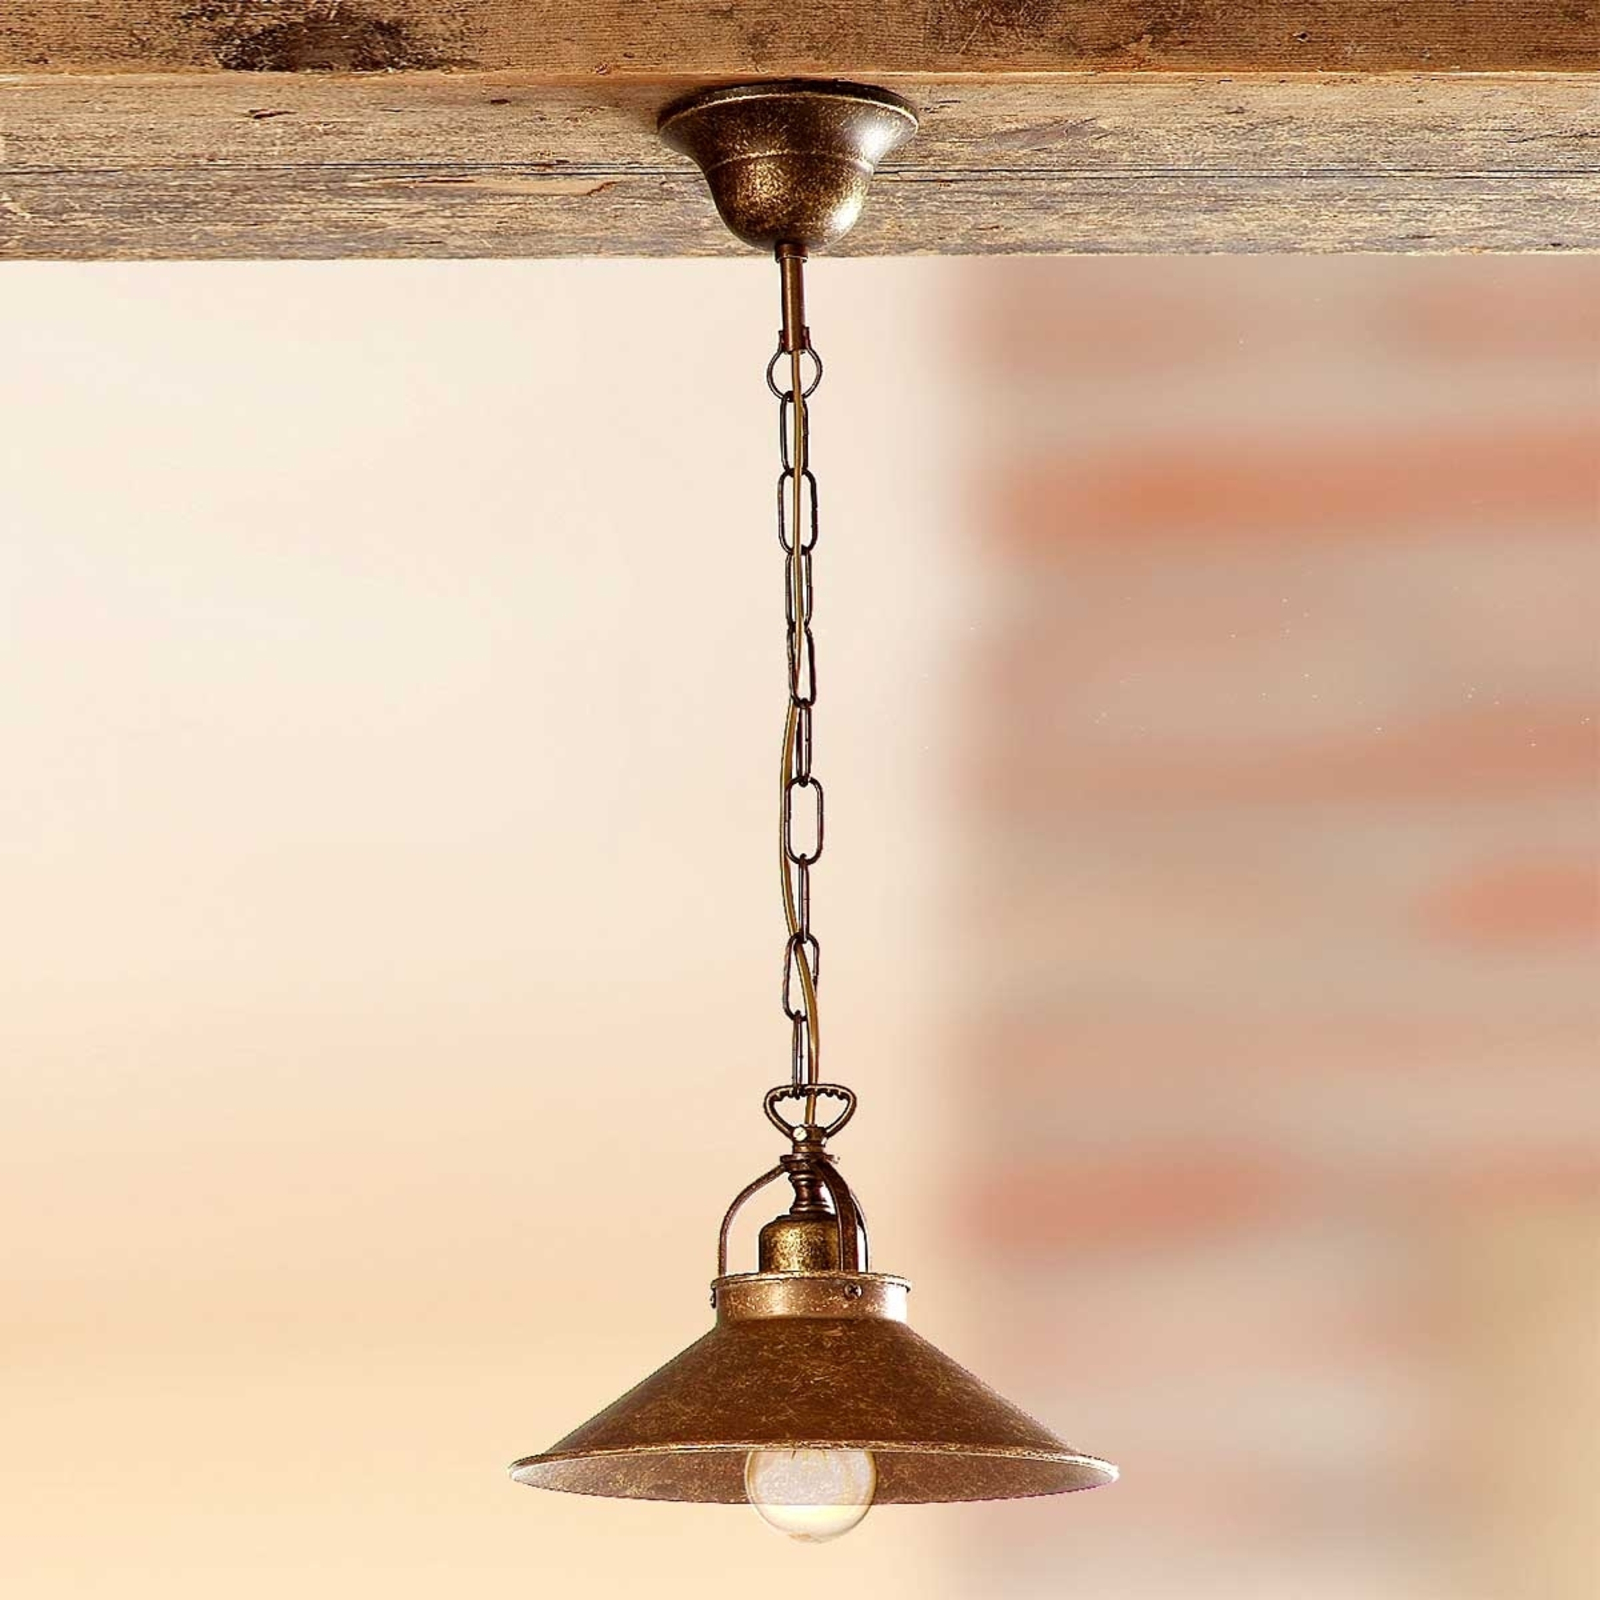 Rustic BRUNO hanging light 25 cm